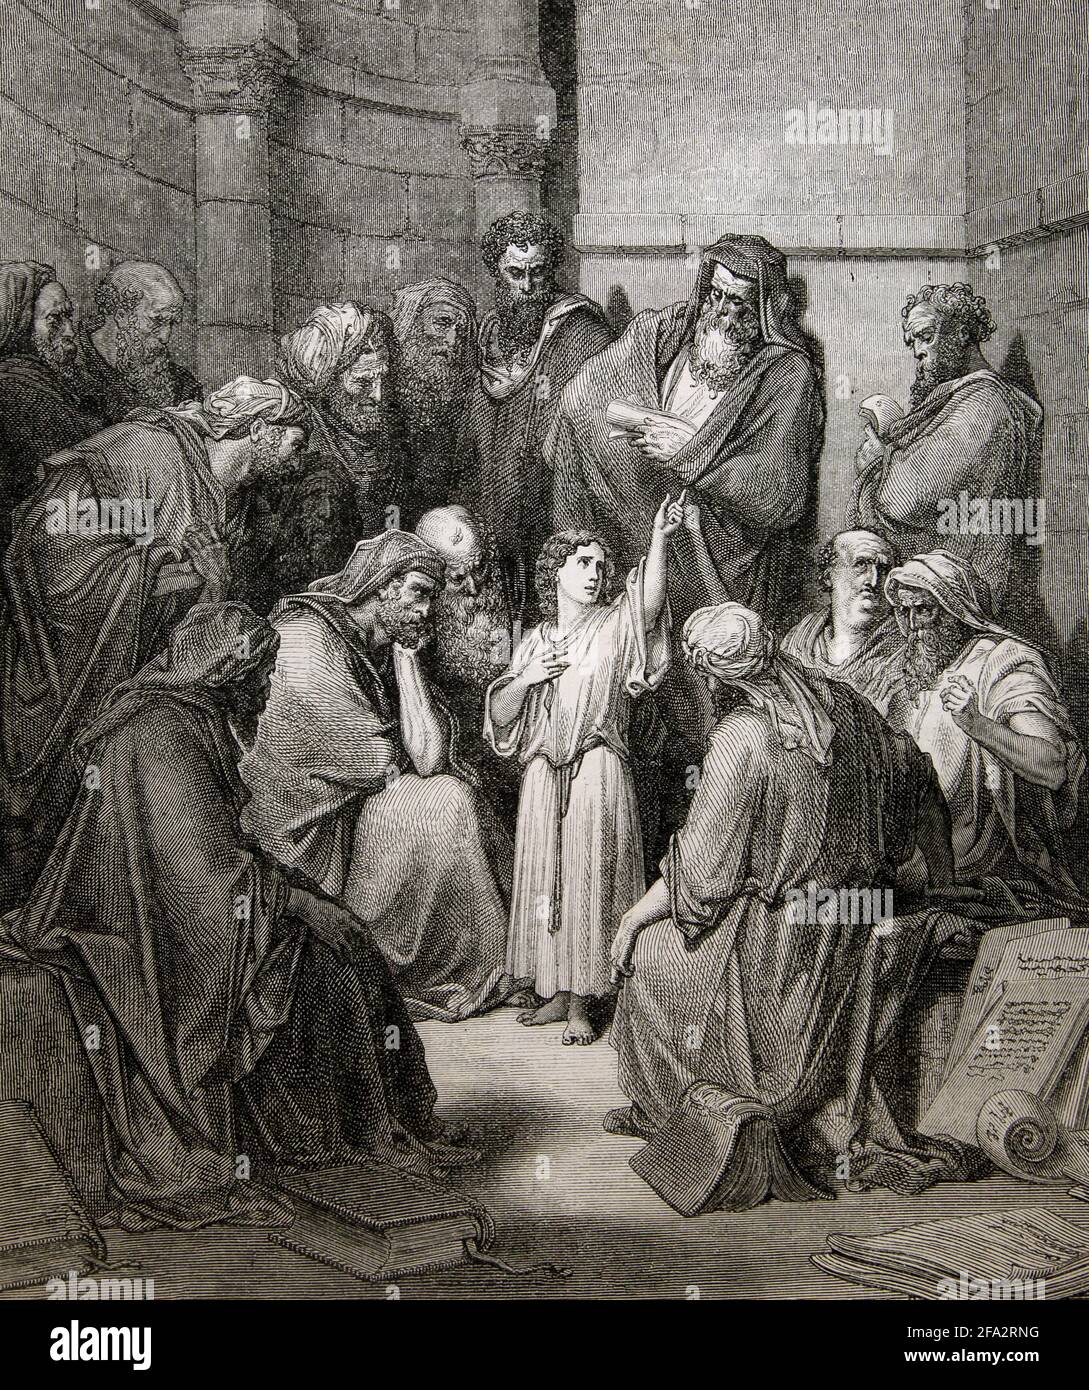 Illustrazione della storia della Bibbia di Gesù con i Medici (Luca 46-47) Di Gustave dore Foto Stock